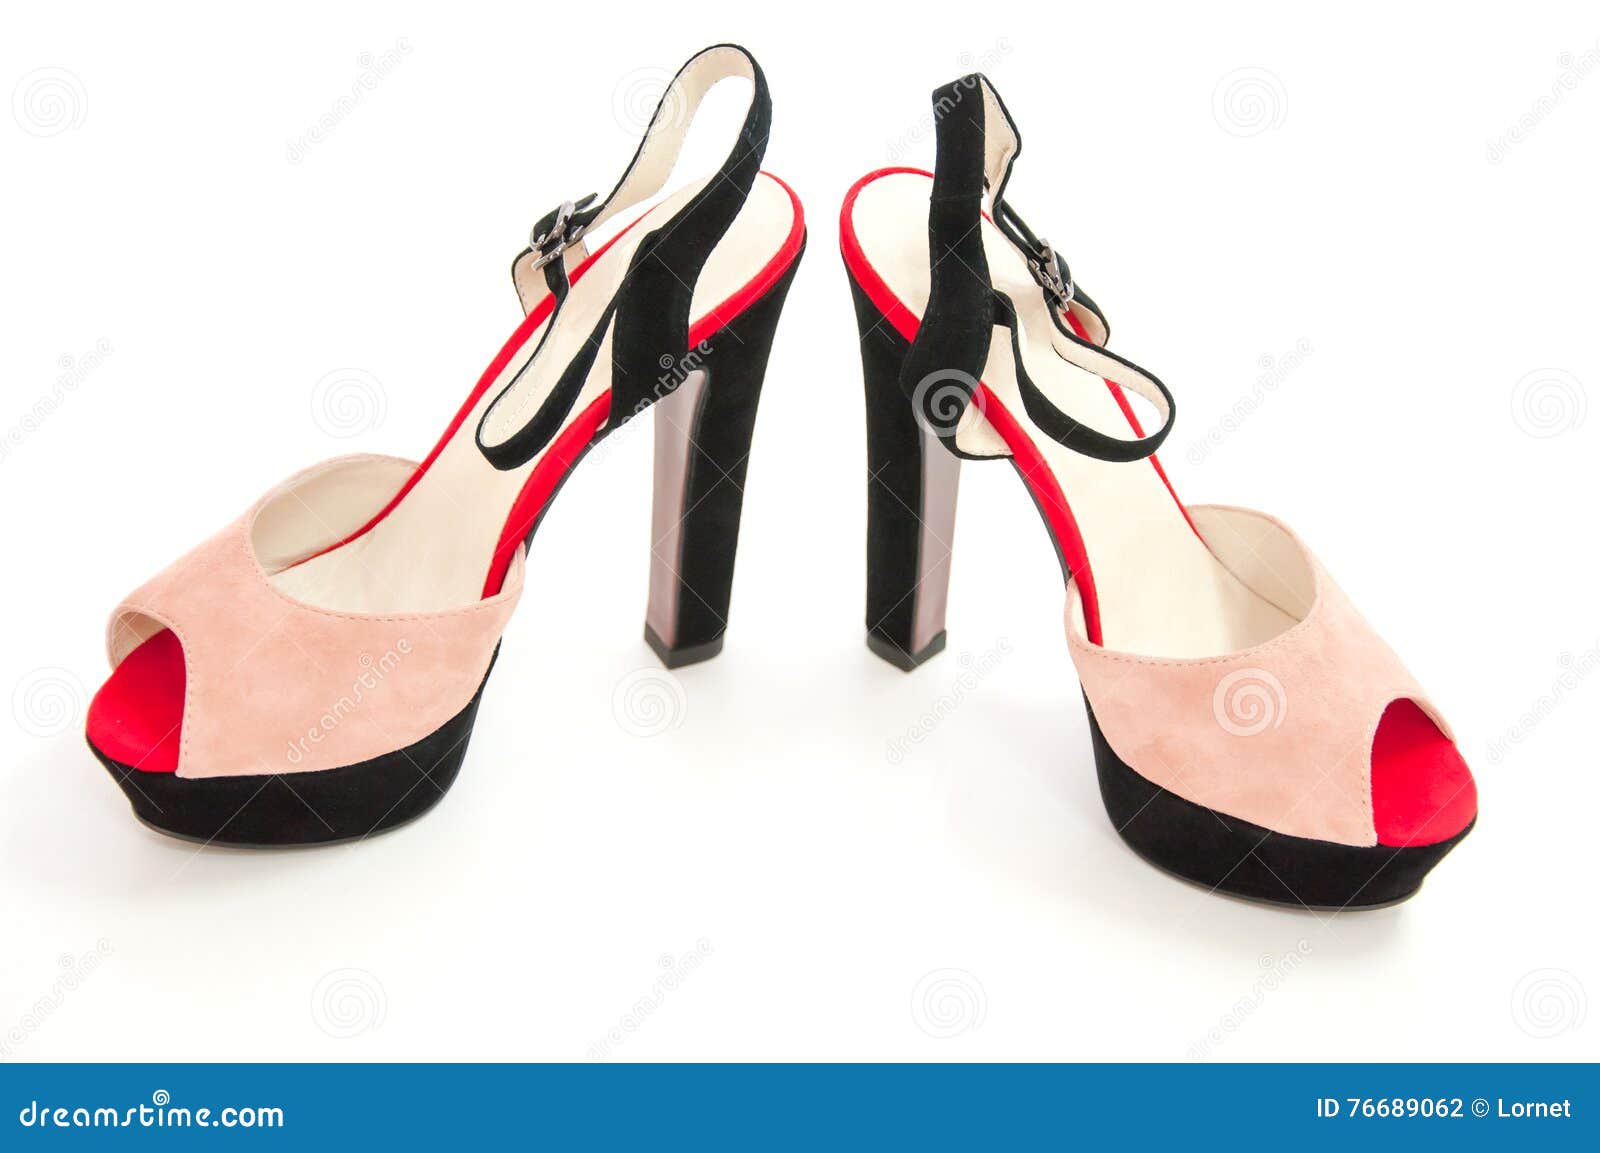 Bulk-buy Removable Bow Woman Shoe Ankle Strap Medium Heel Ladies Sandals  price comparison